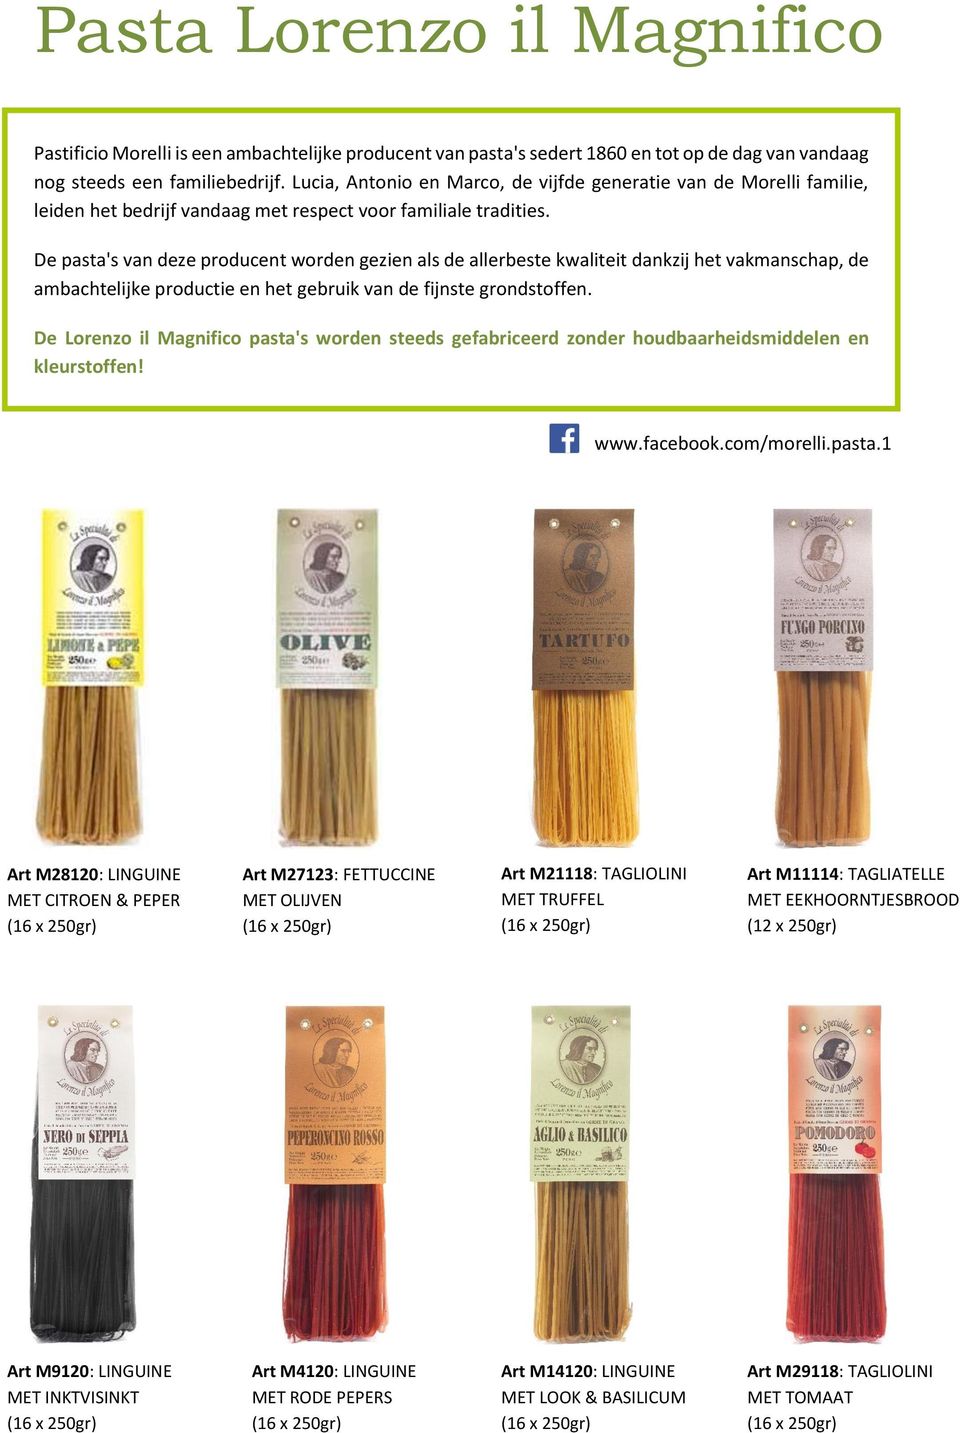 De pasta's van deze producent worden gezien als de allerbeste kwaliteit dankzij het vakmanschap, de ambachtelijke productie en het gebruik van de fijnste grondstoffen.